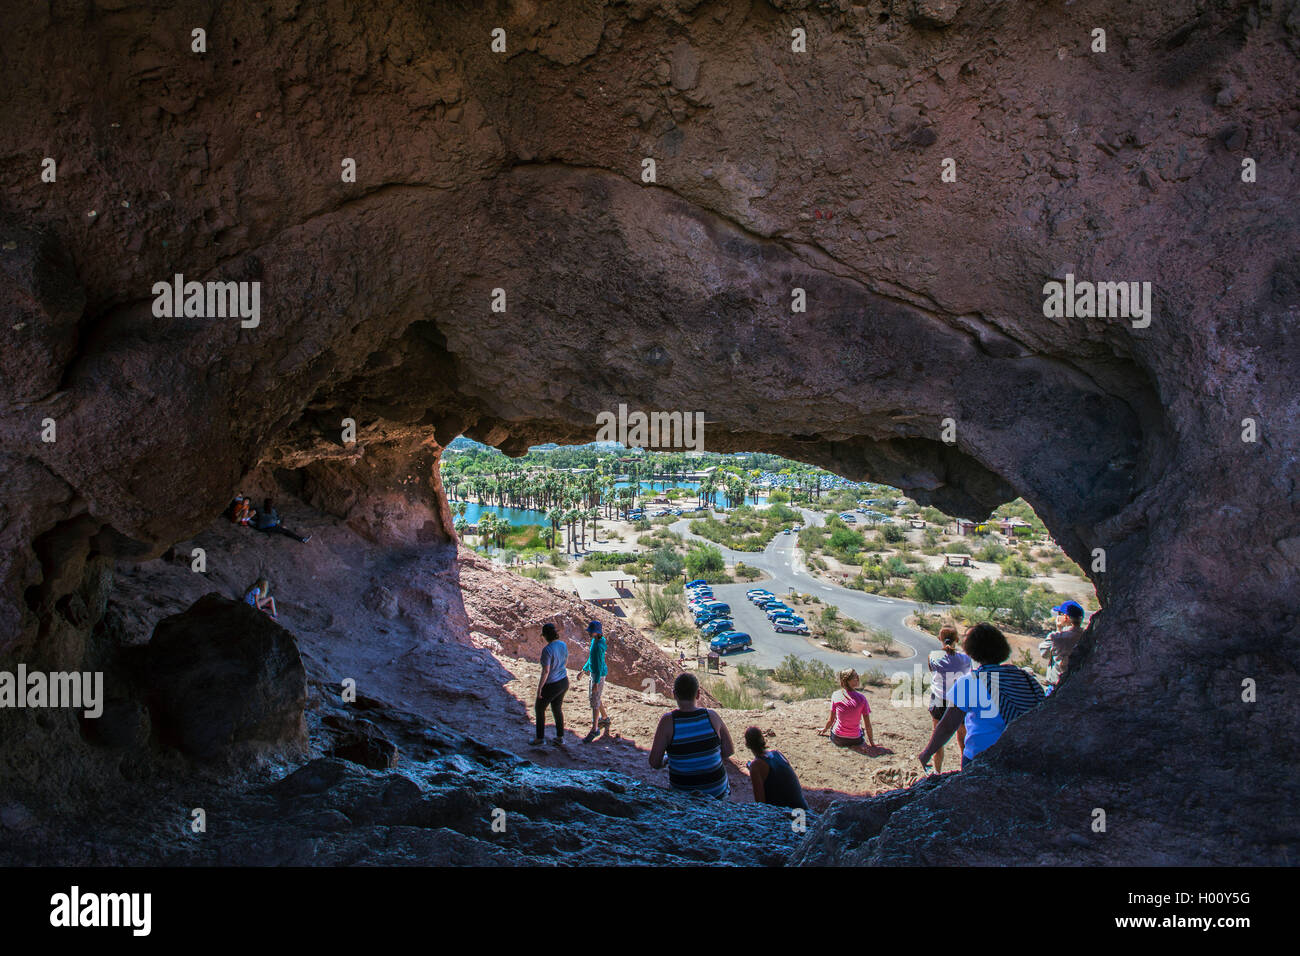 Agujero-en-el-Rock, cueva de piedra arenisca roja, vista a través de la cueva en el park, Estados Unidos, Arizona, el parque Papago, Phoenix Foto de stock